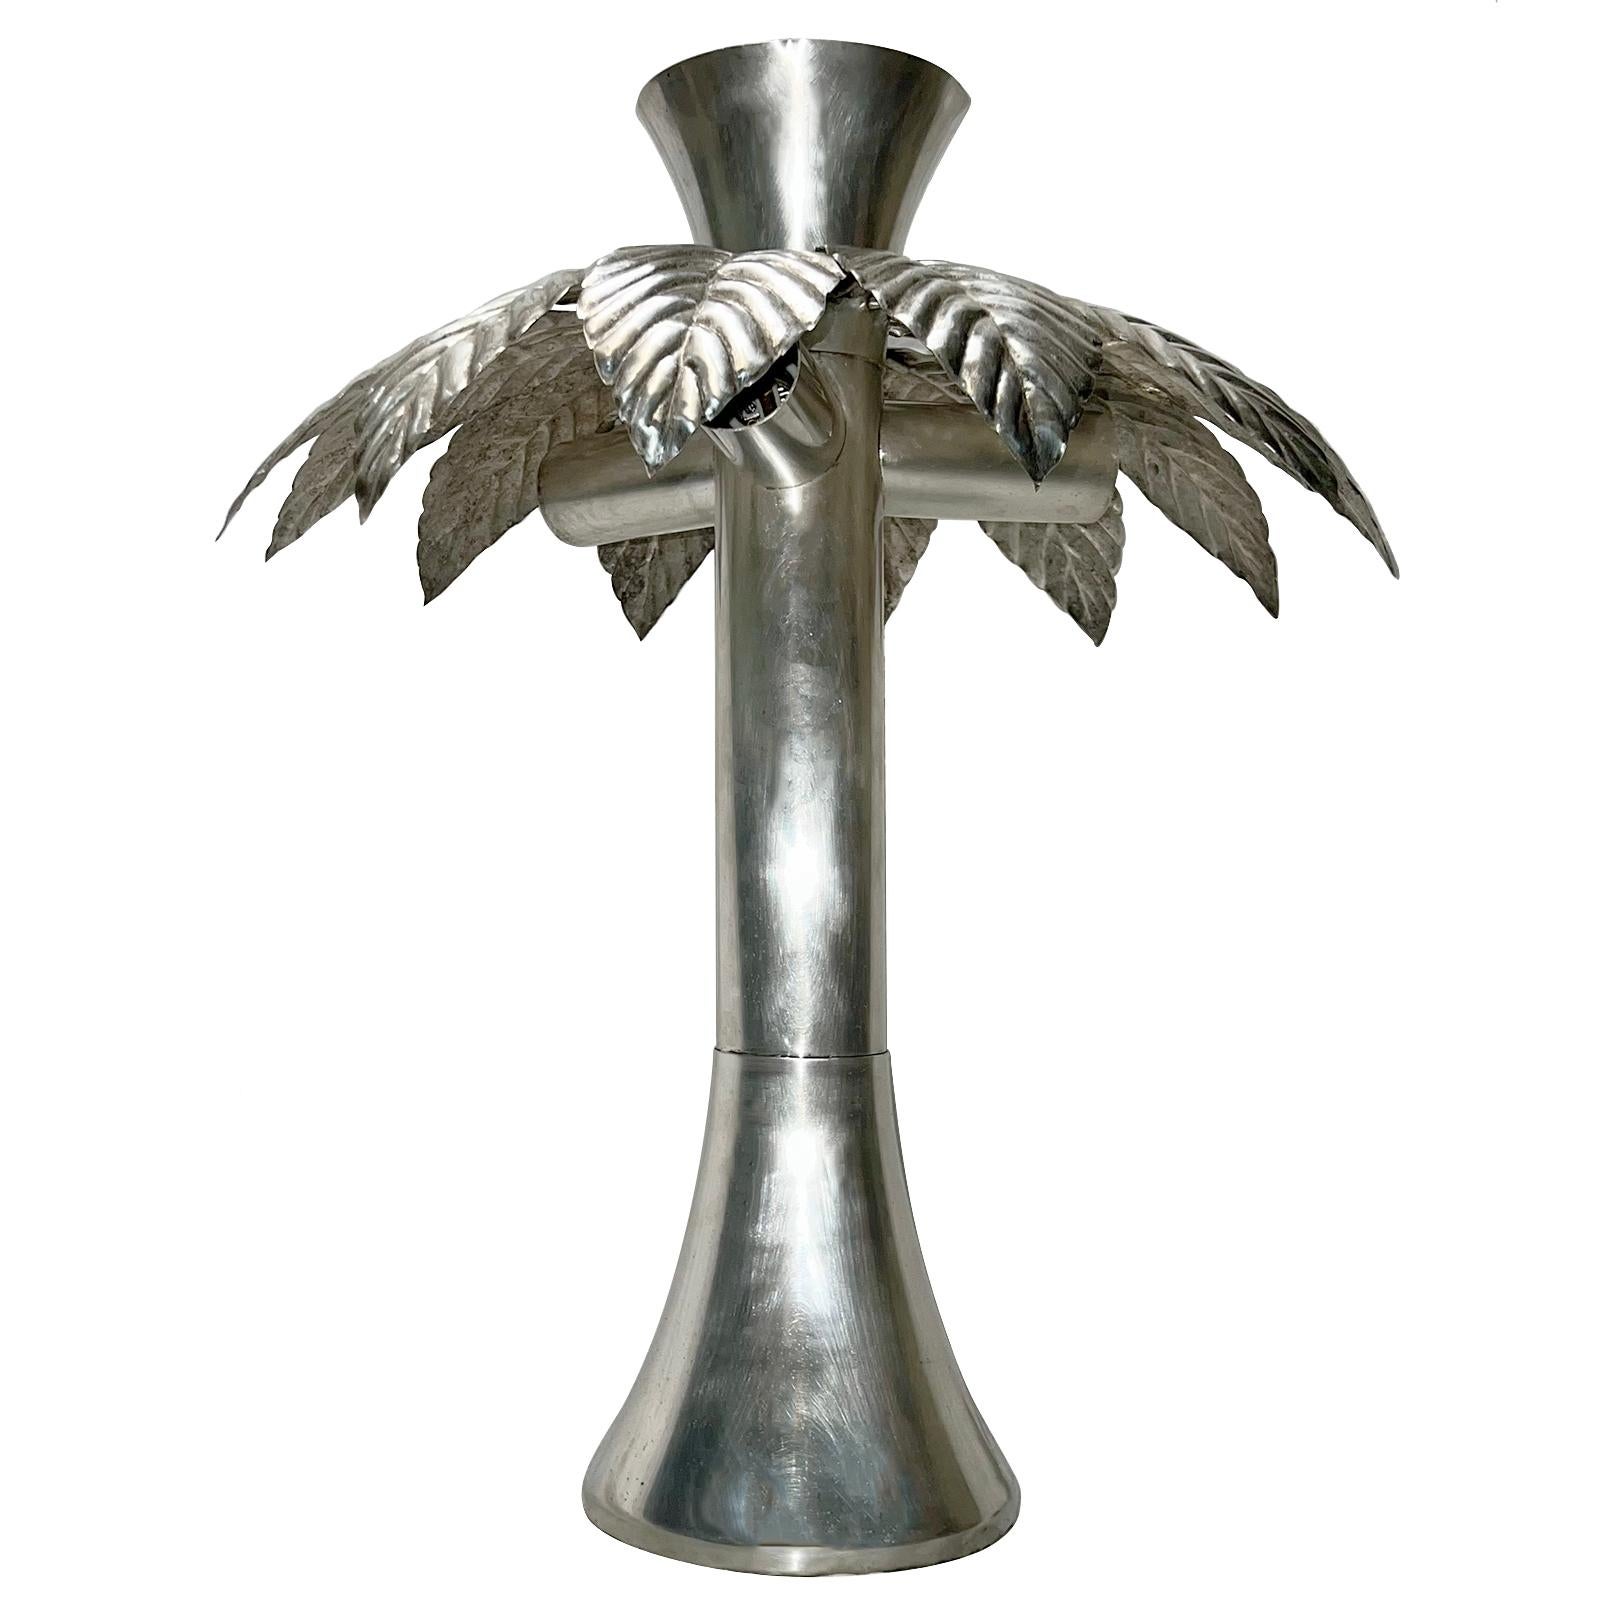 Lampe de table en forme de palmier en métal martelé, datant des années 1950, avec patine d'origine.

Mesures :
Hauteur : 25.75